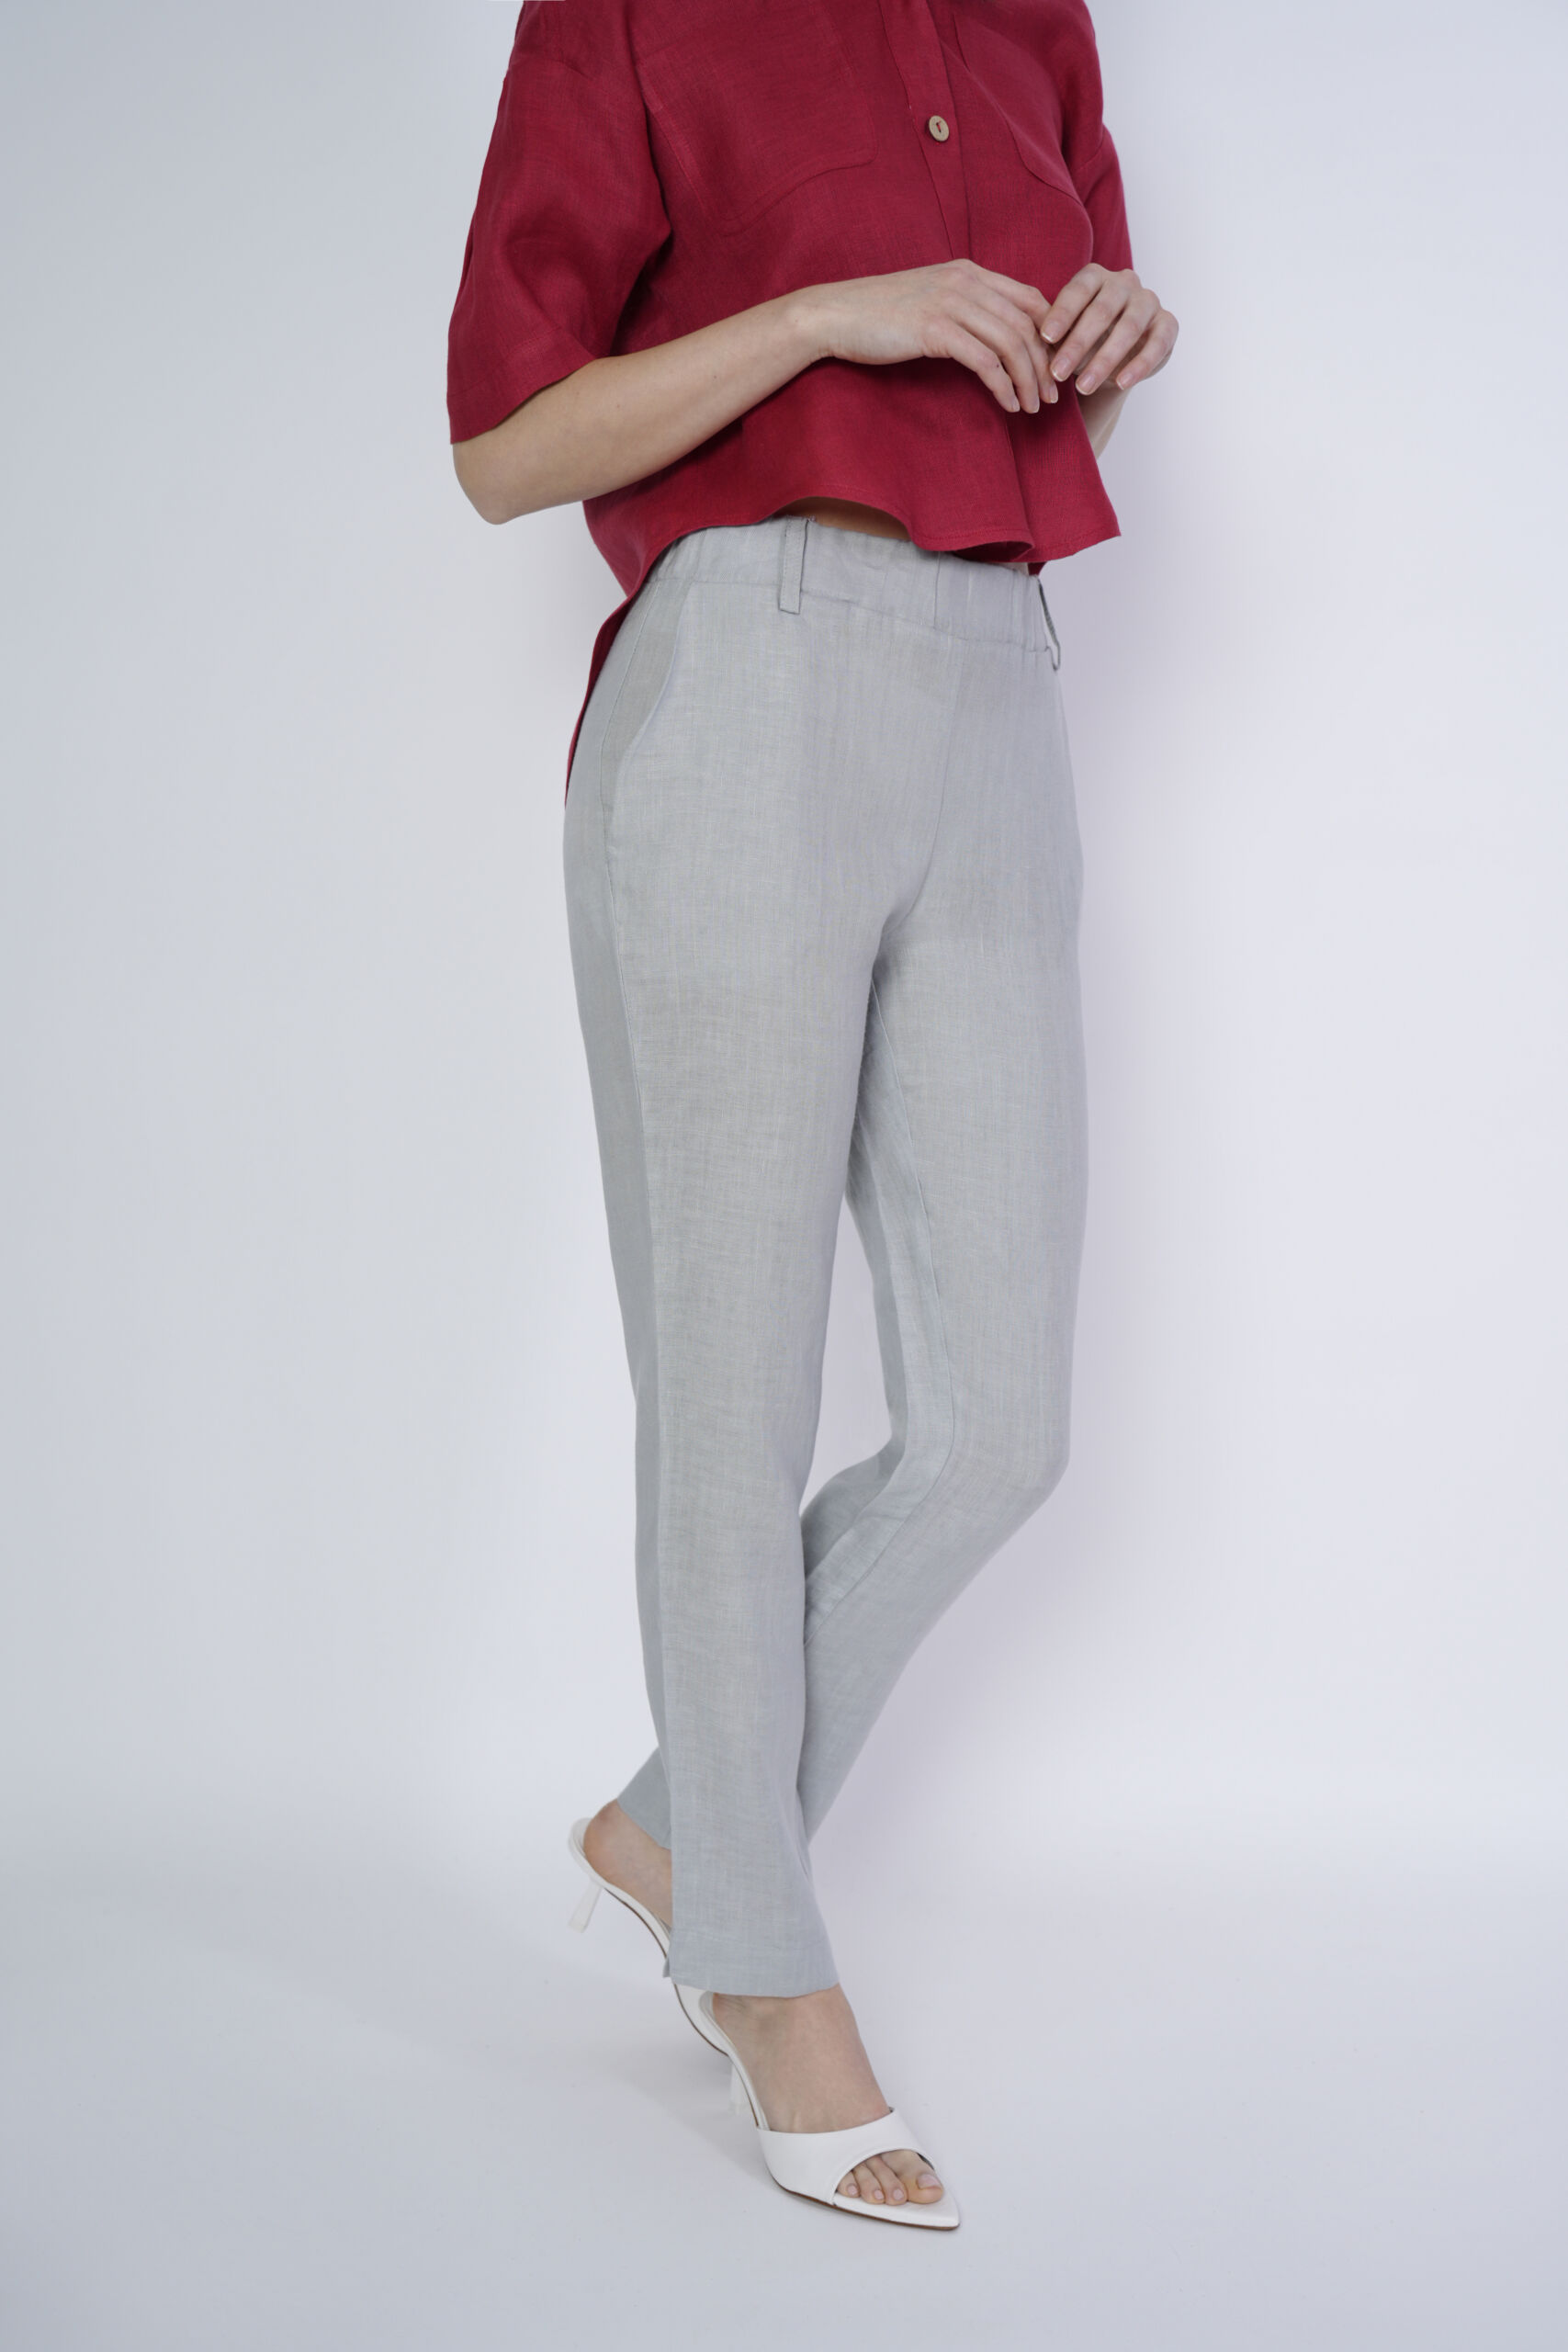 Rosa Grigio Chiaro 1 scaled 1stAmerican pantalone da donna con passanti e tasche - pantalone con elastico in vita puro lino 100% Made in Italy